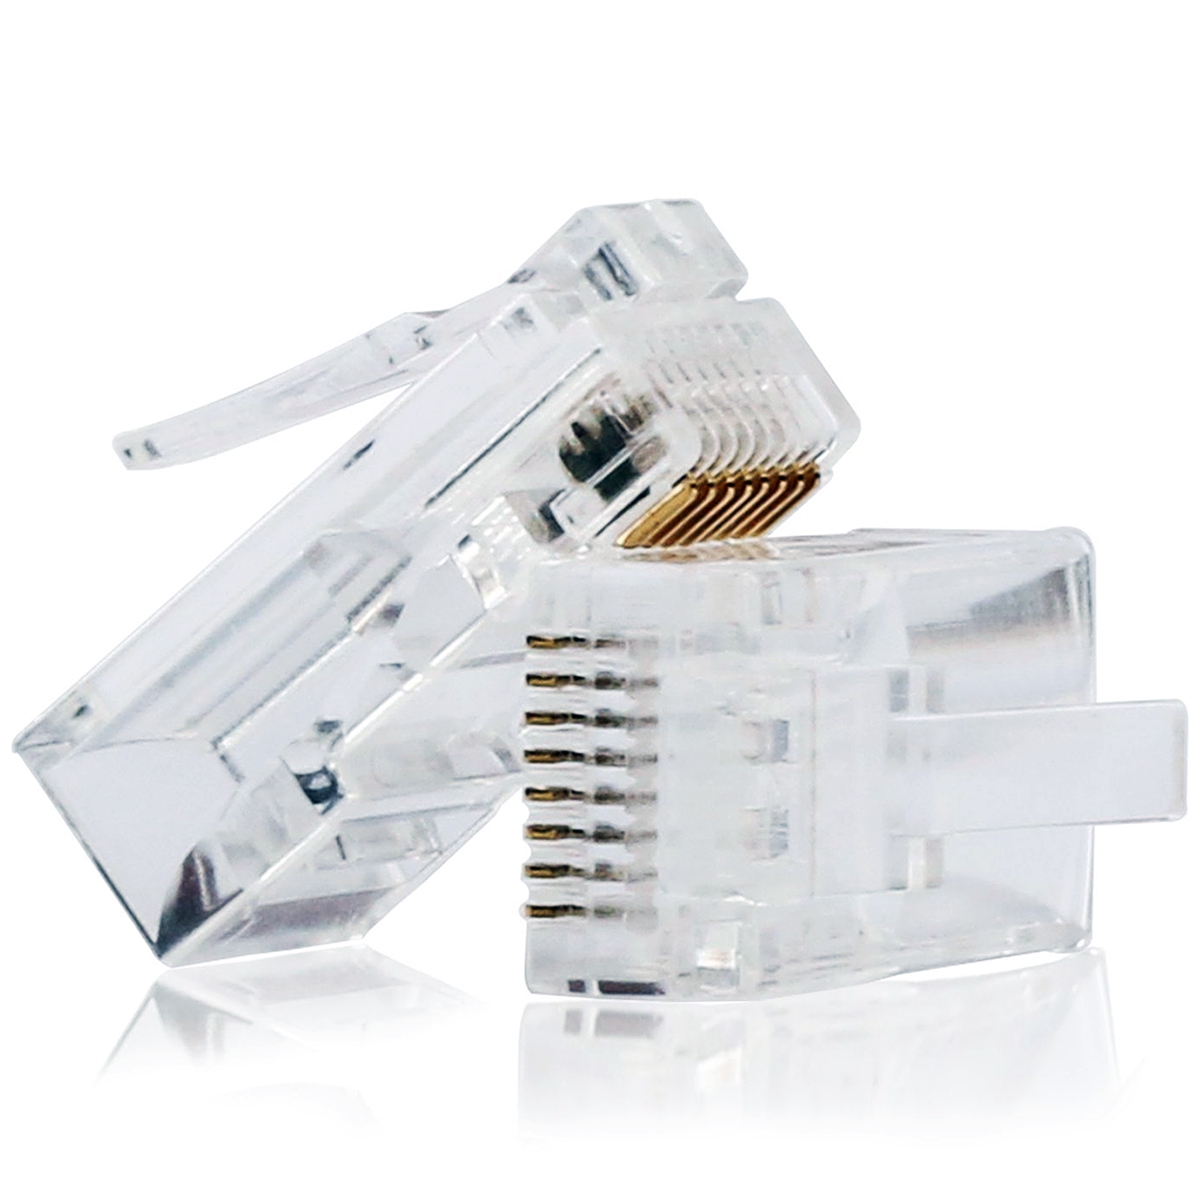 Conector rj45 cat5 y cat6 para redes LAN ⋆ Gongus CA Tienda